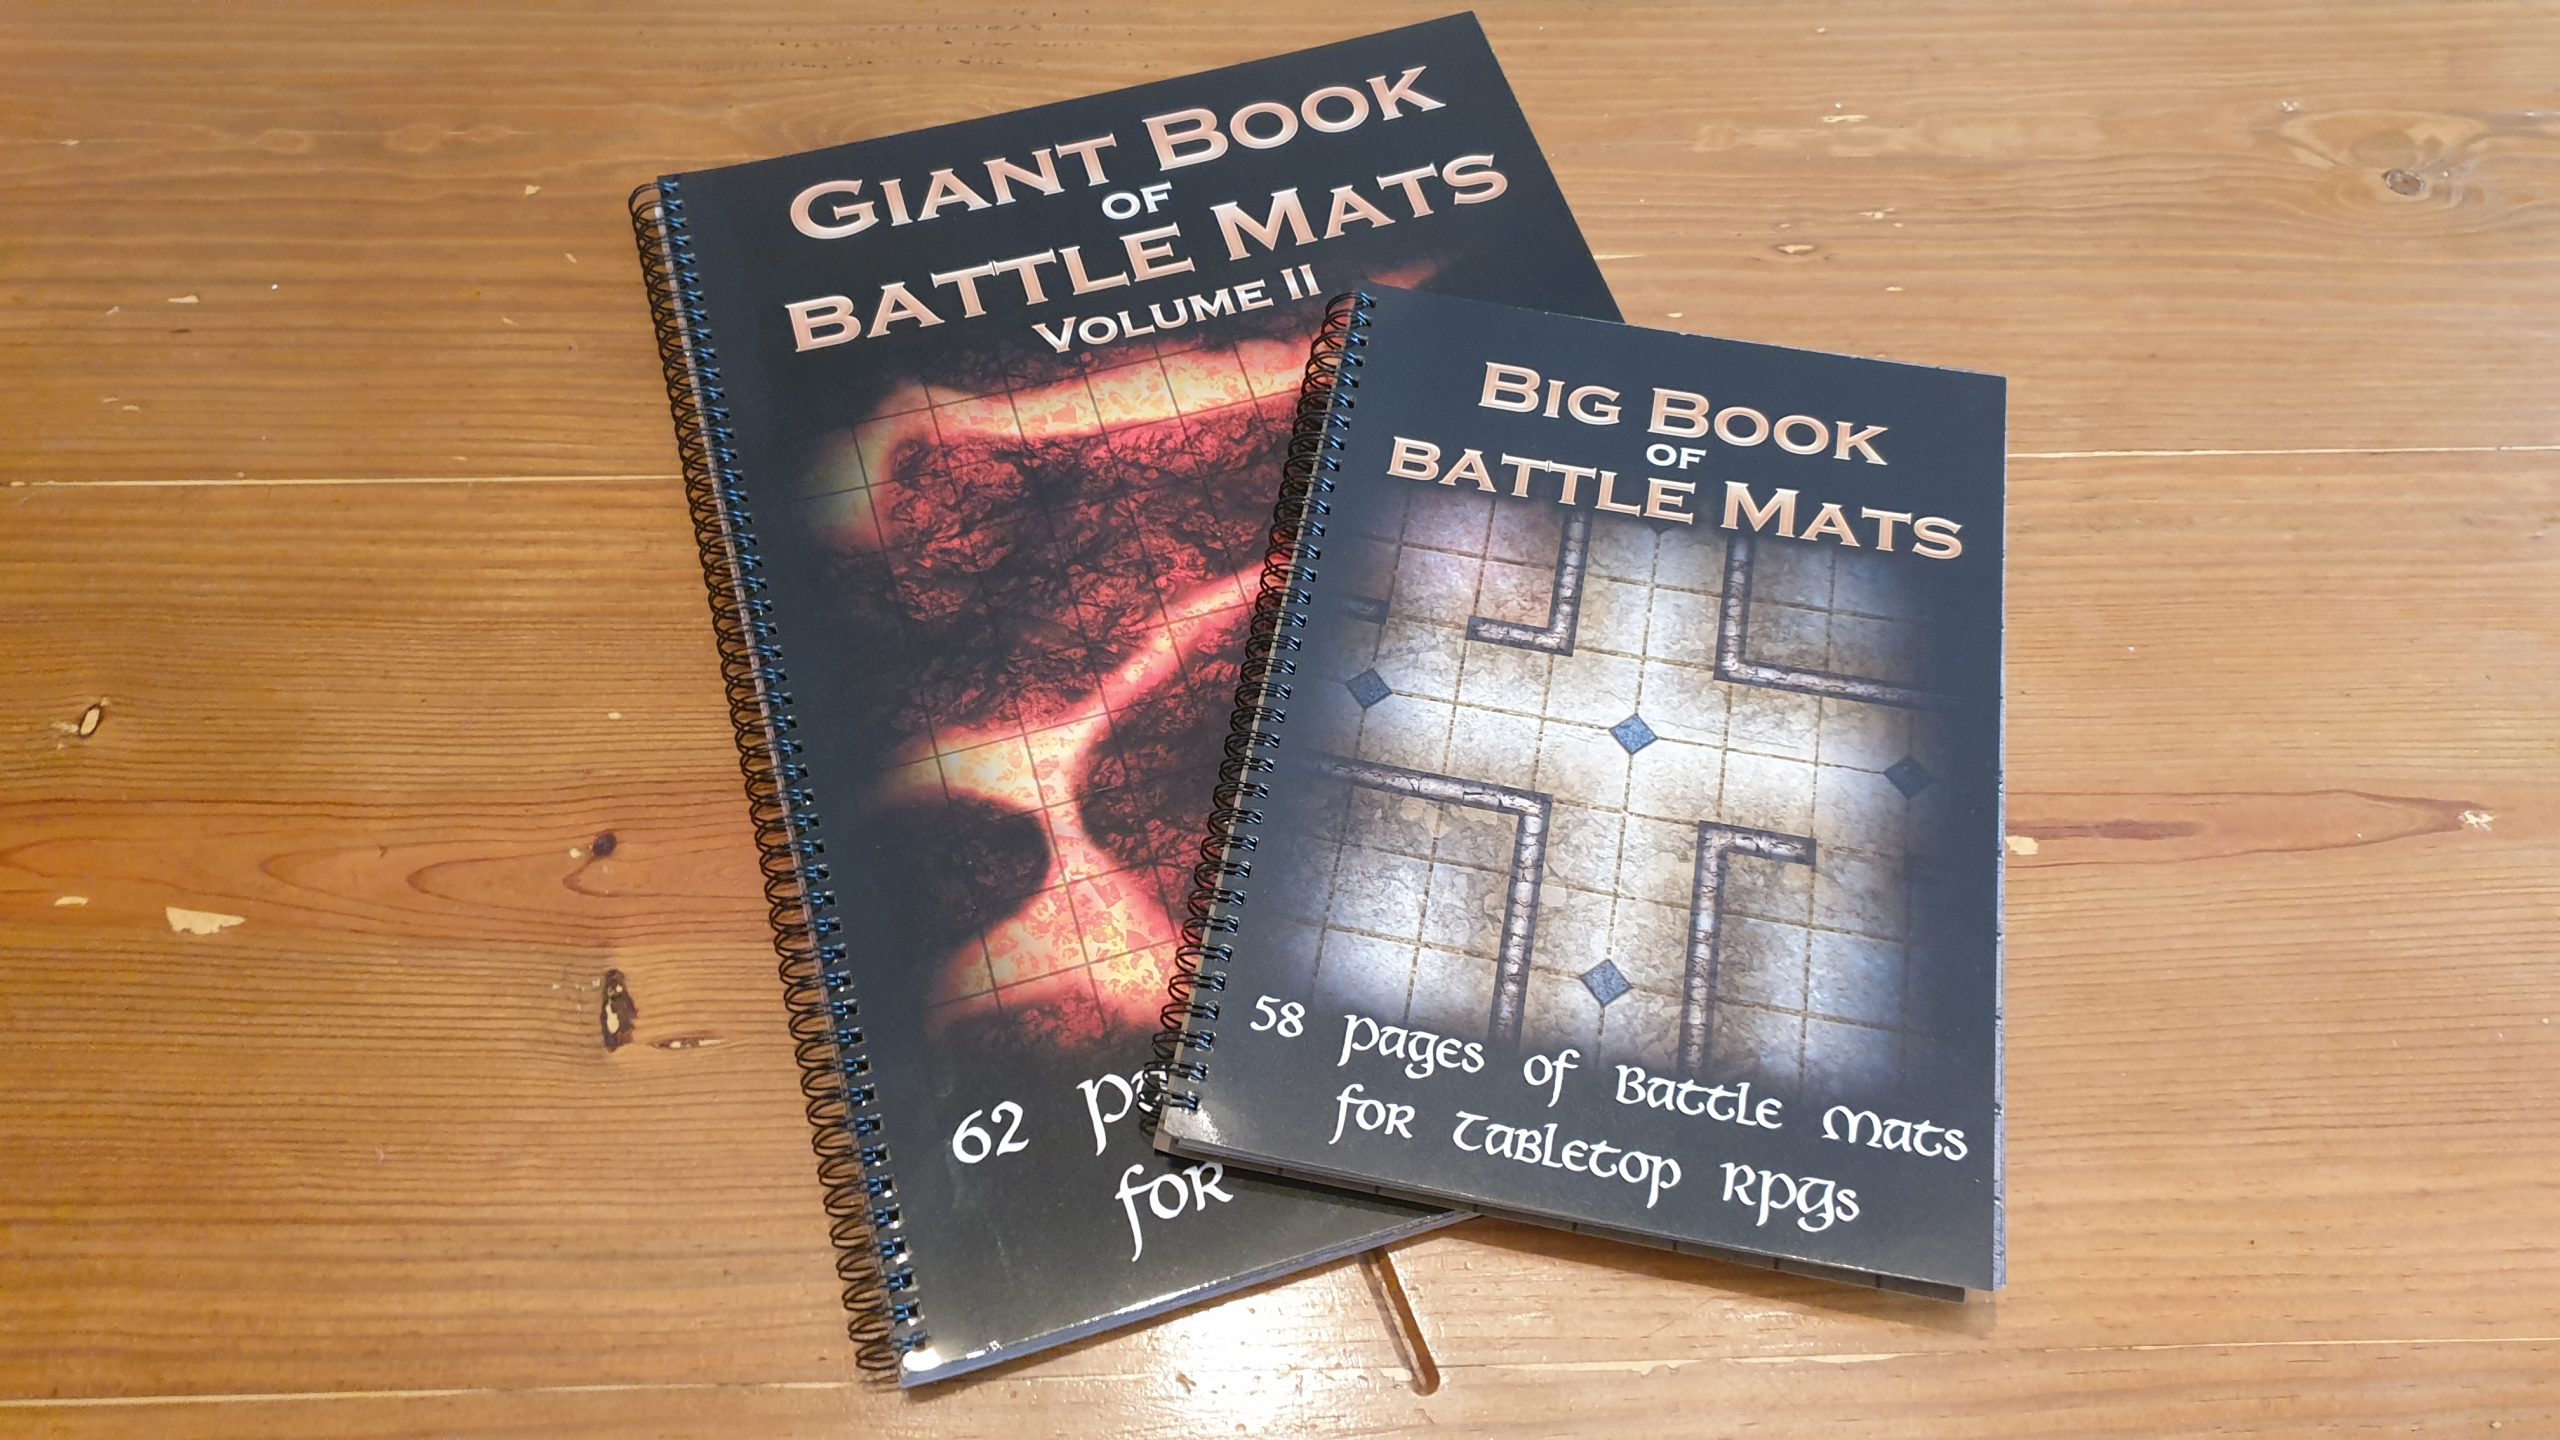 Loke BattleMats Review – The Big Book of Battle Mats Vol. 1 and Giant Book of Battle Mats Vol. 2